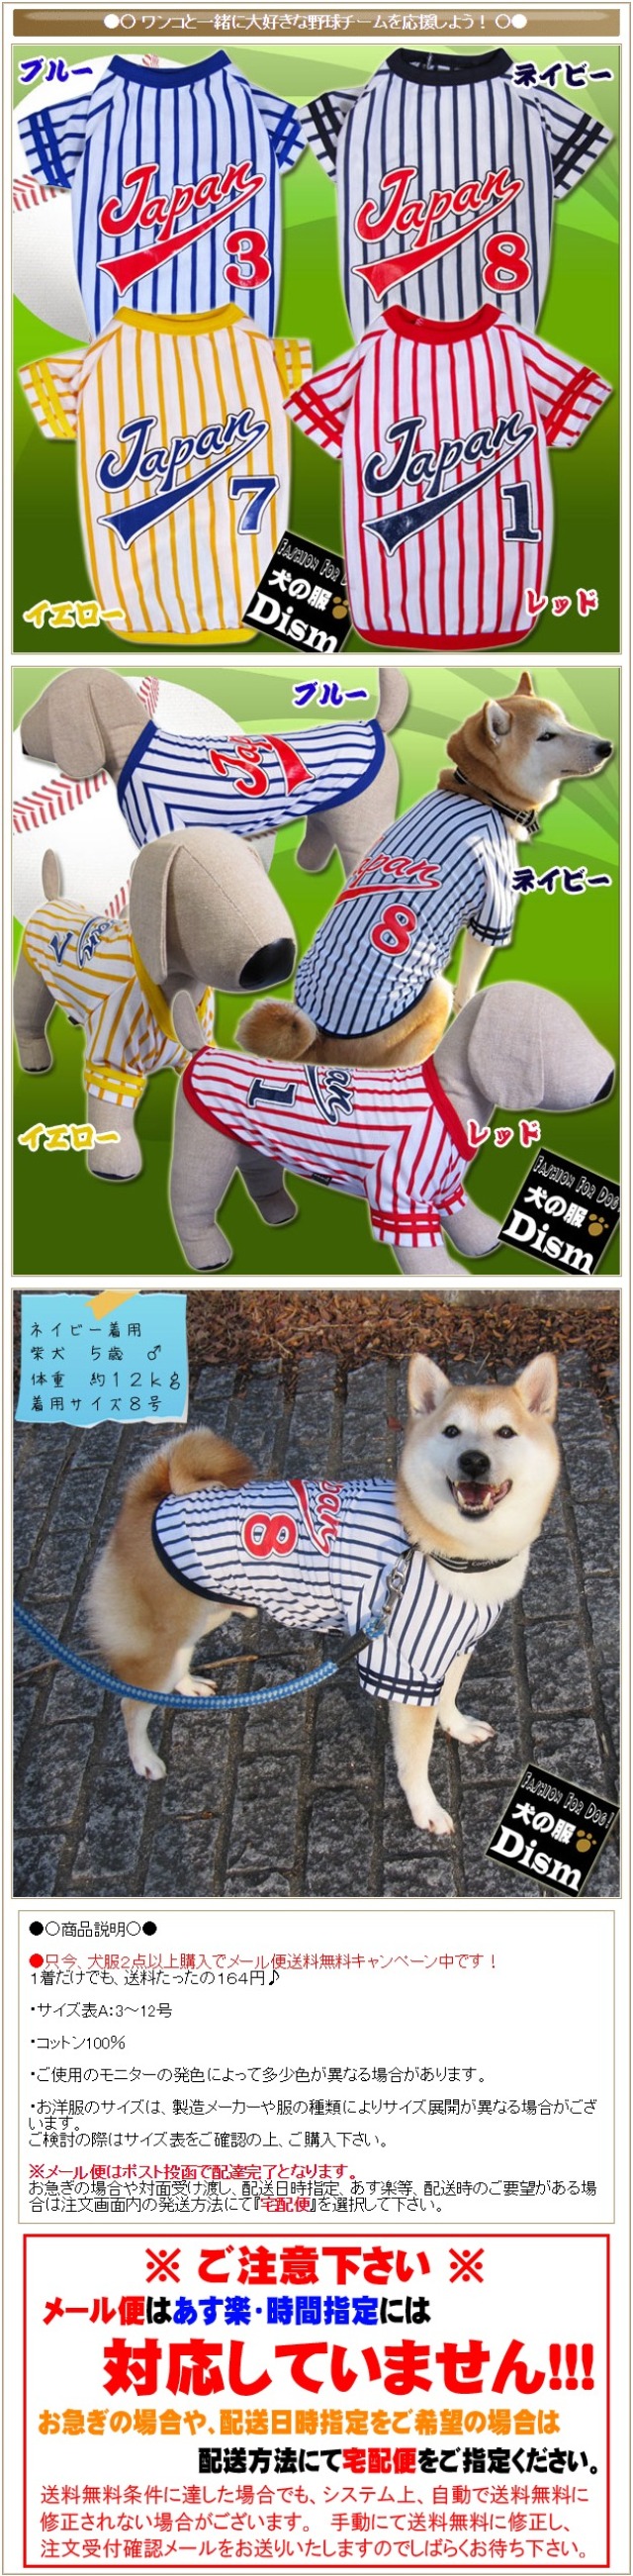 犬服 Japanユニフォーム ベースボールtシャツ 小型犬用 犬の洋服屋さん ポンパレモール店 ポンパレモール